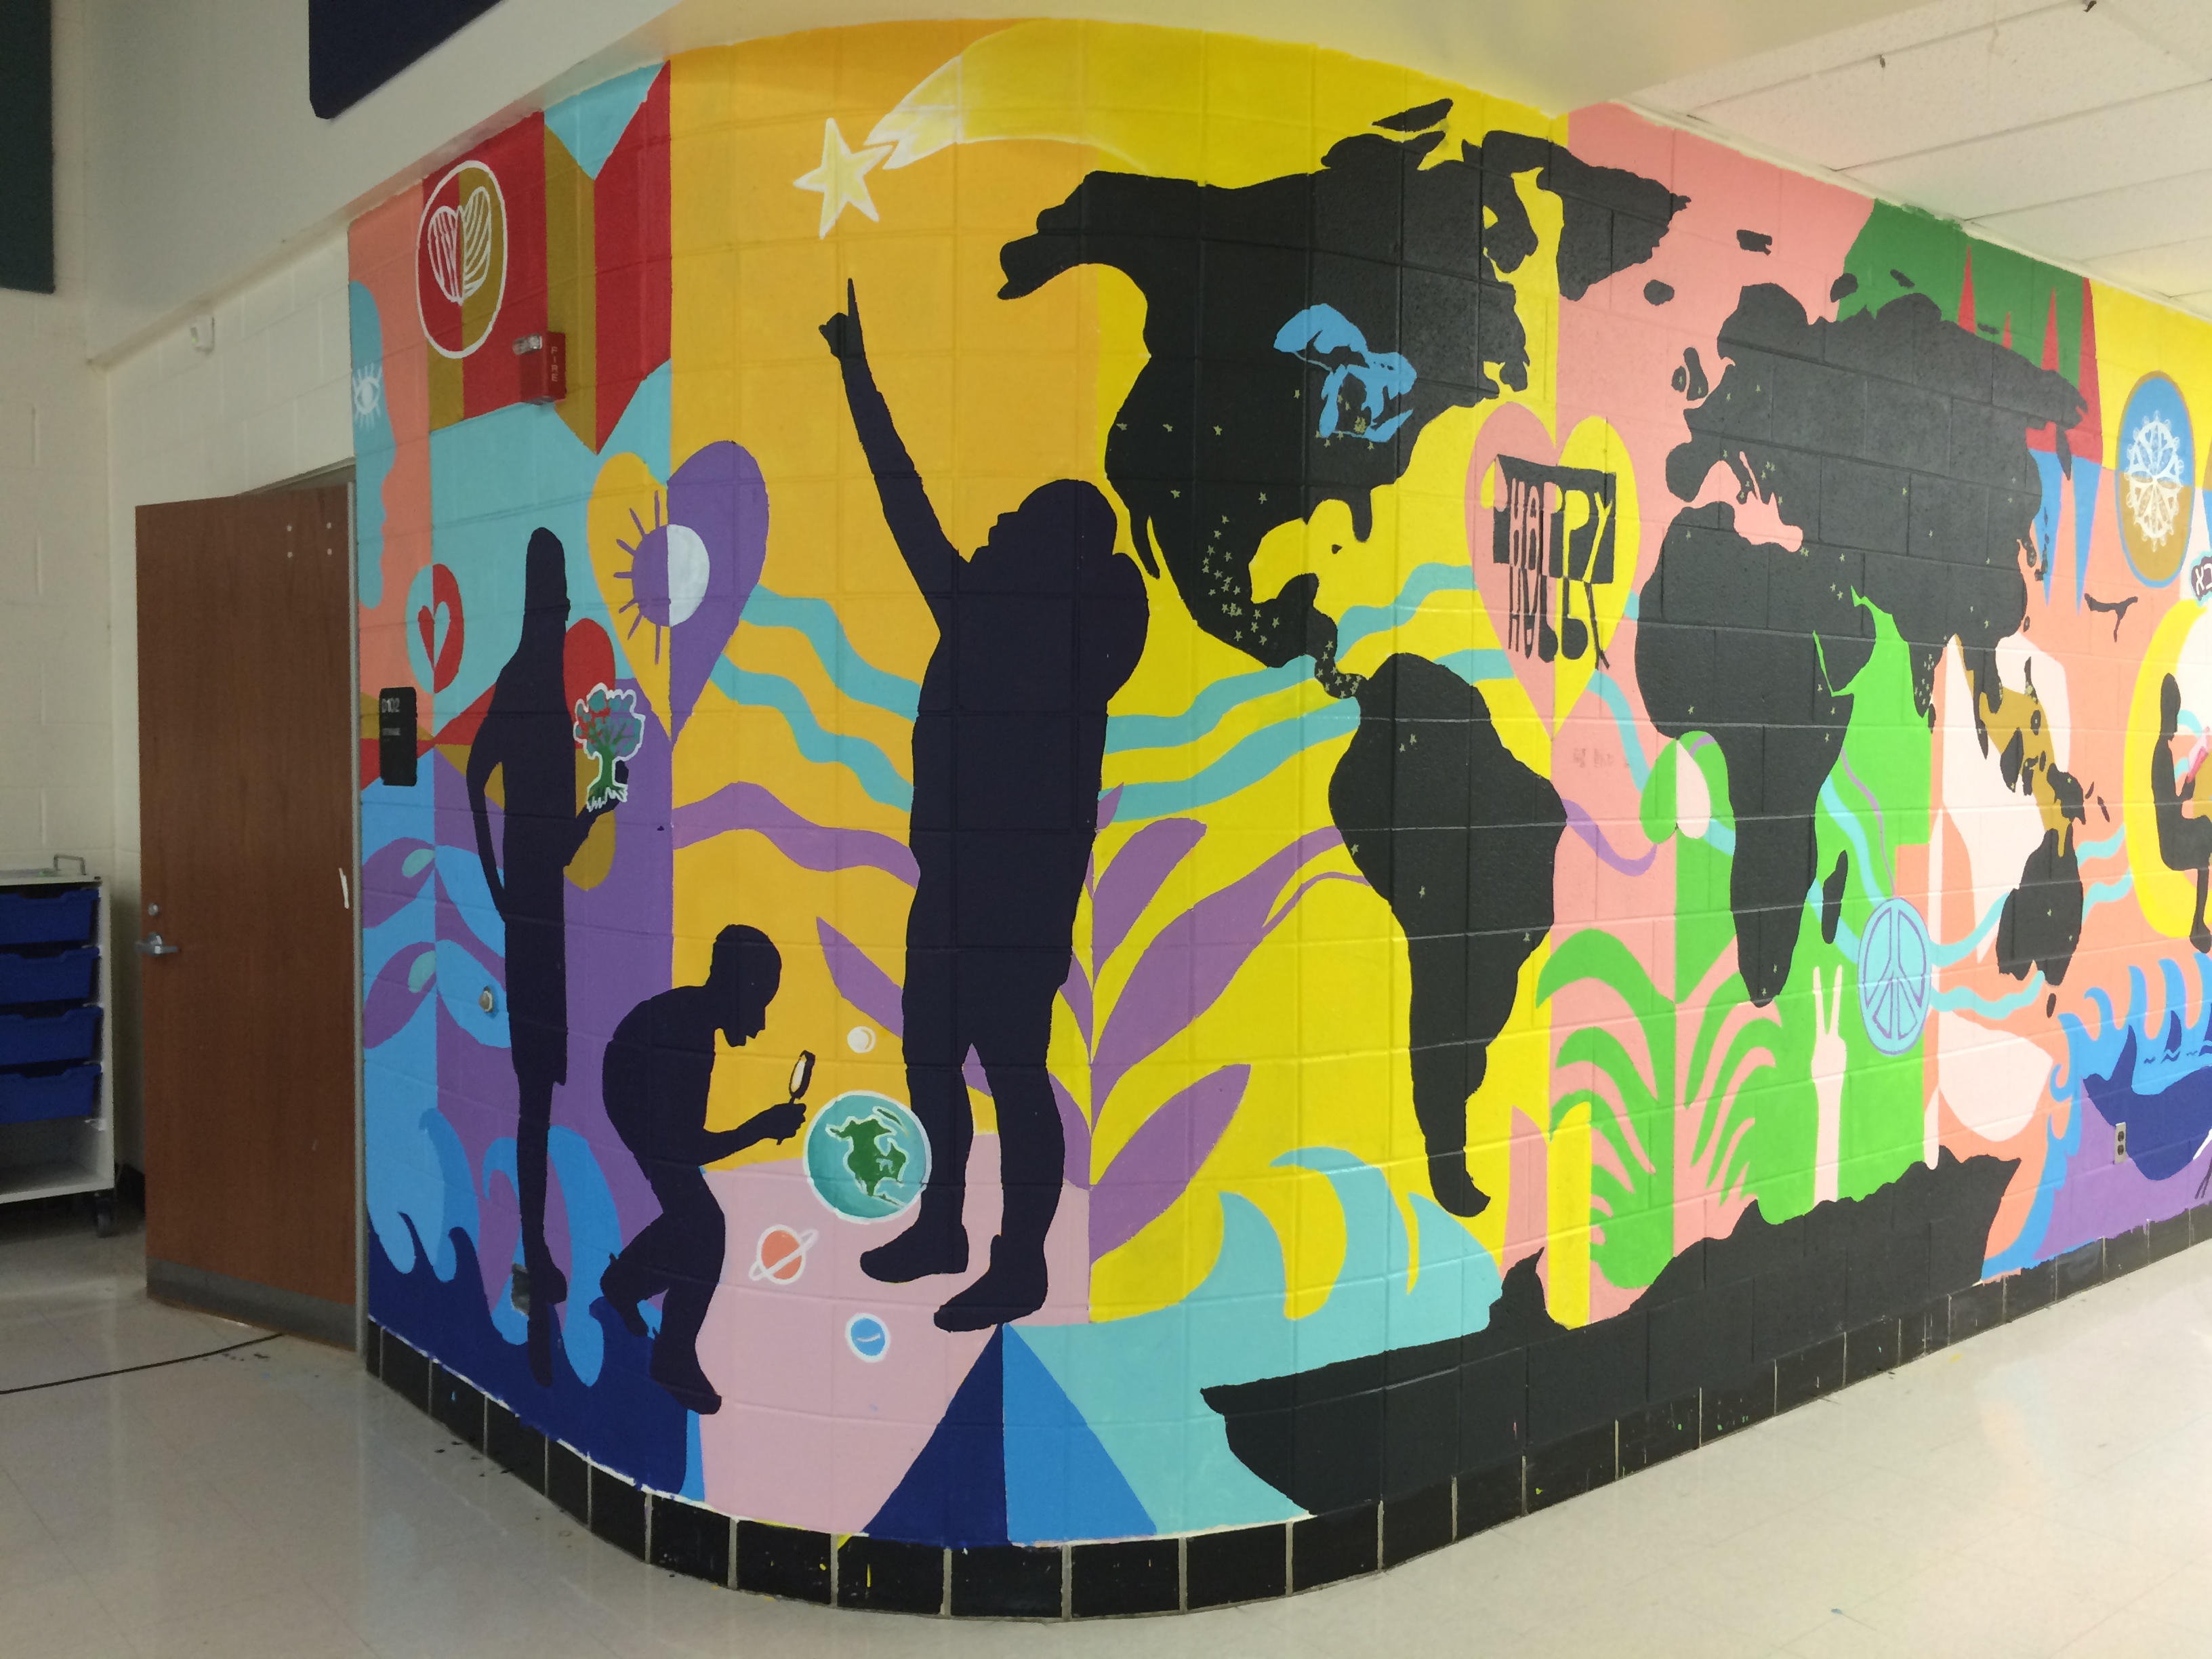 SESLA – Scarlet Middle School Mural Project